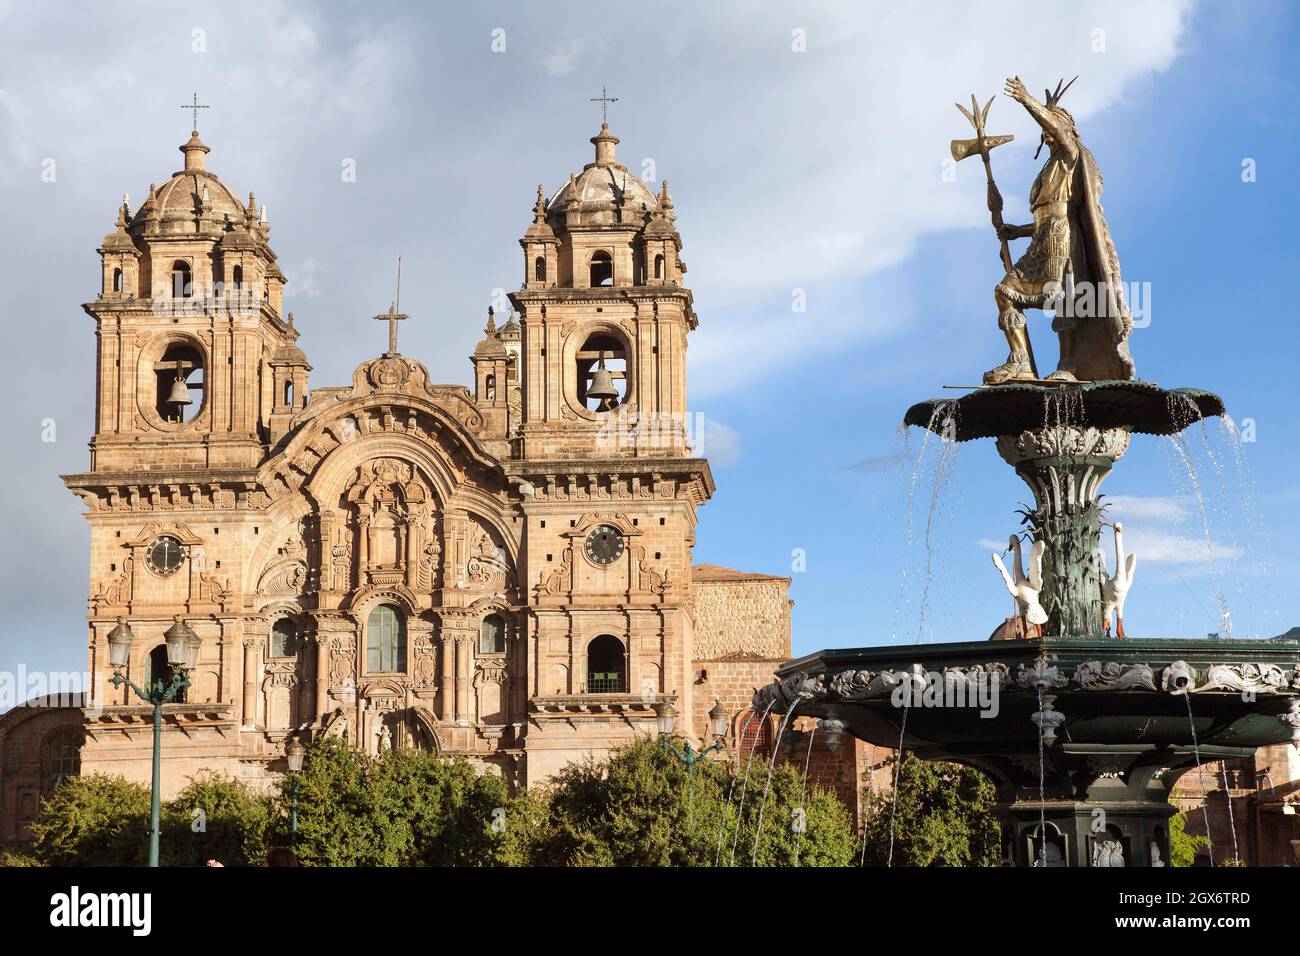 Statue de l'Inca Pachacutec sur la fontaine et église catholique sur la Plaza de Armas, Cusco ou Cuzco ville, Pérou Banque D'Images